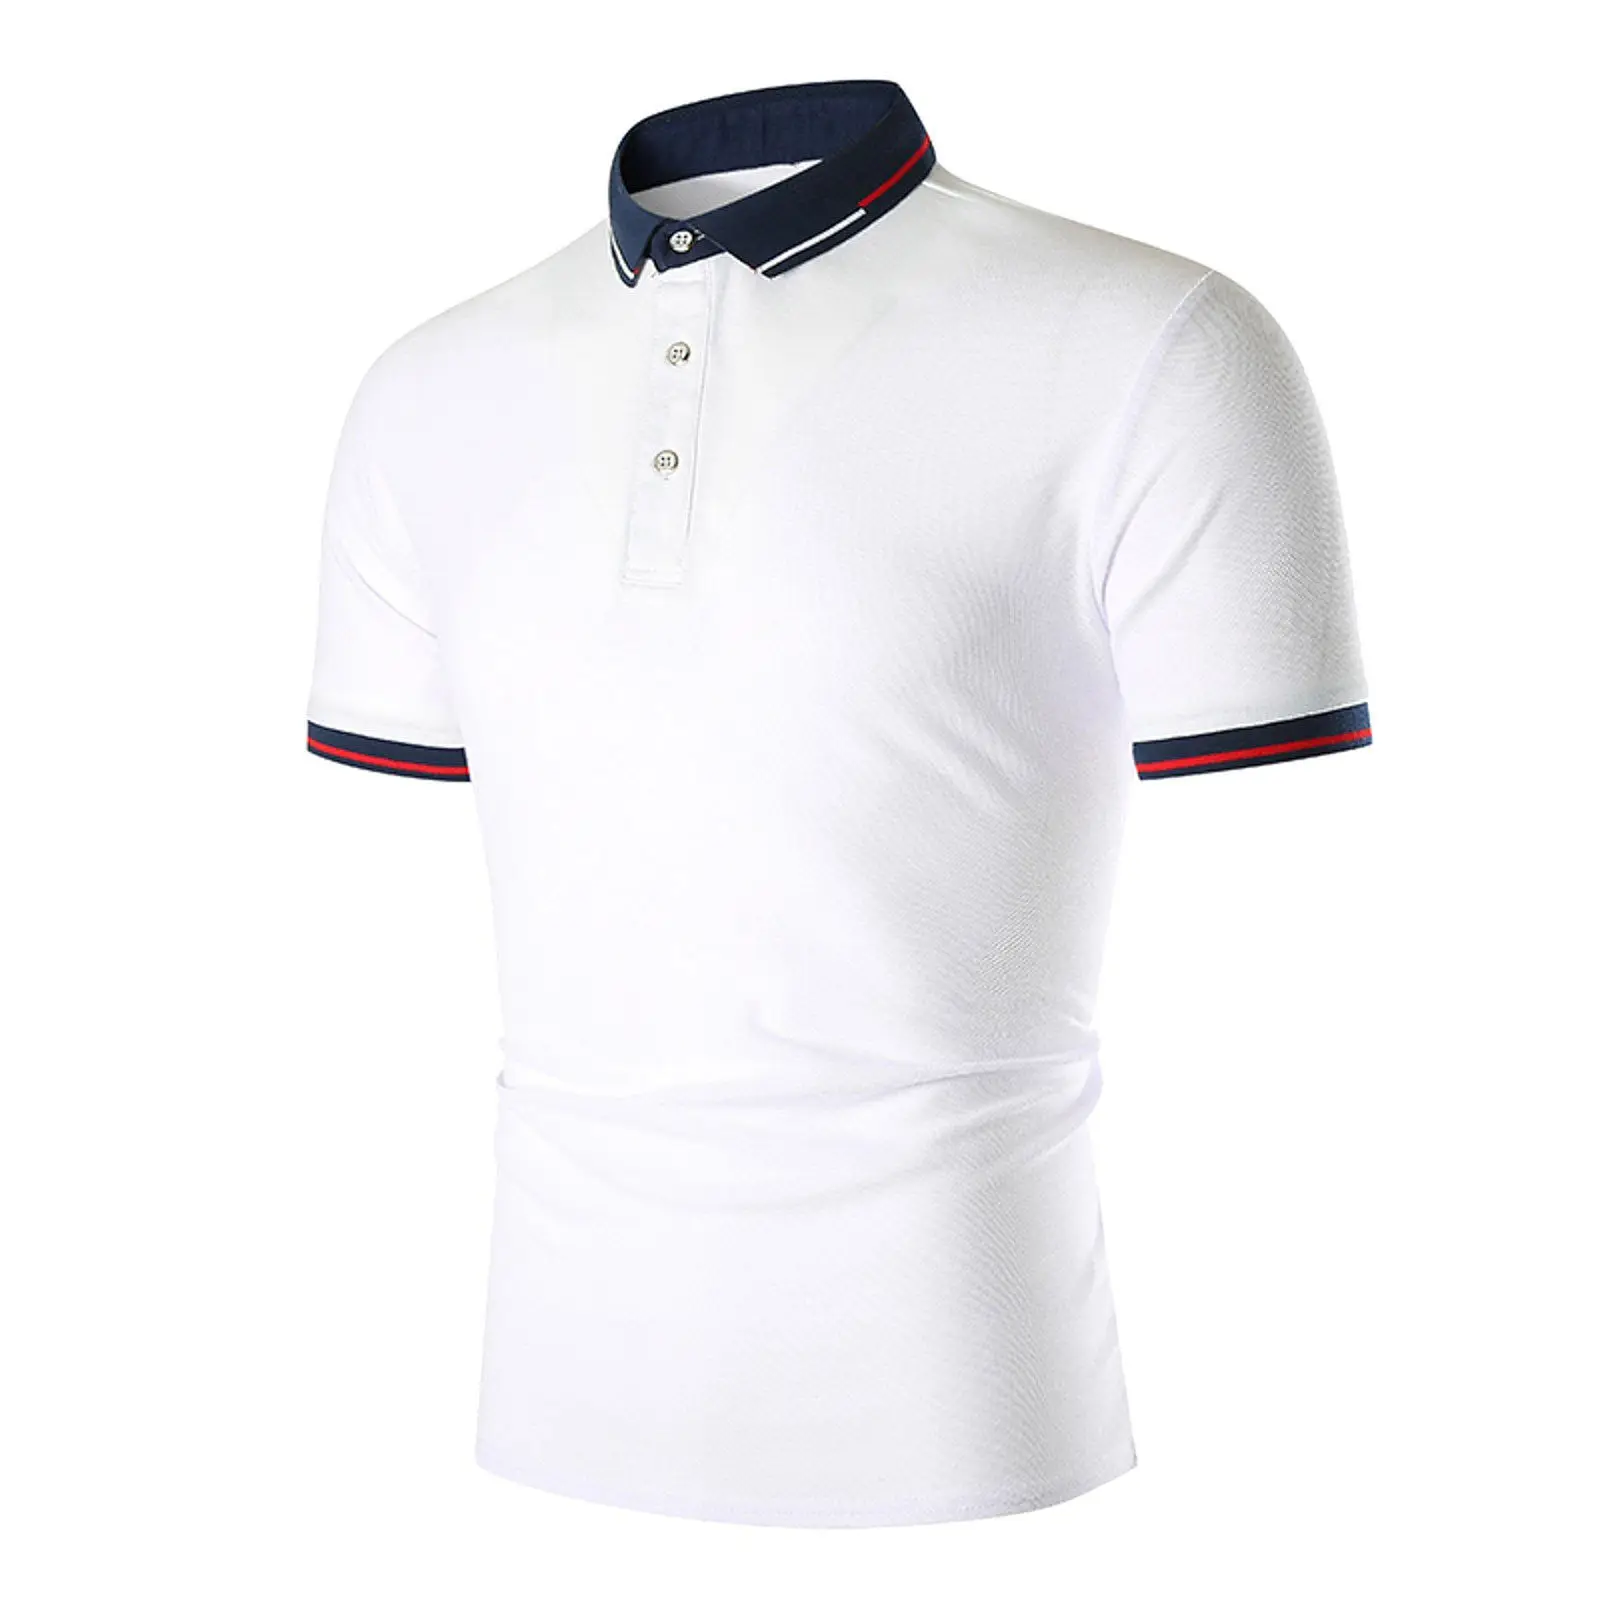 Custom Style Männer Polo T-Shirts Weiße Farbe Entwerfen Sie Ihre eigenen stilvollen blauen Turn Down Kragen Mode tragen Polo T-Shirts für Erwachsene